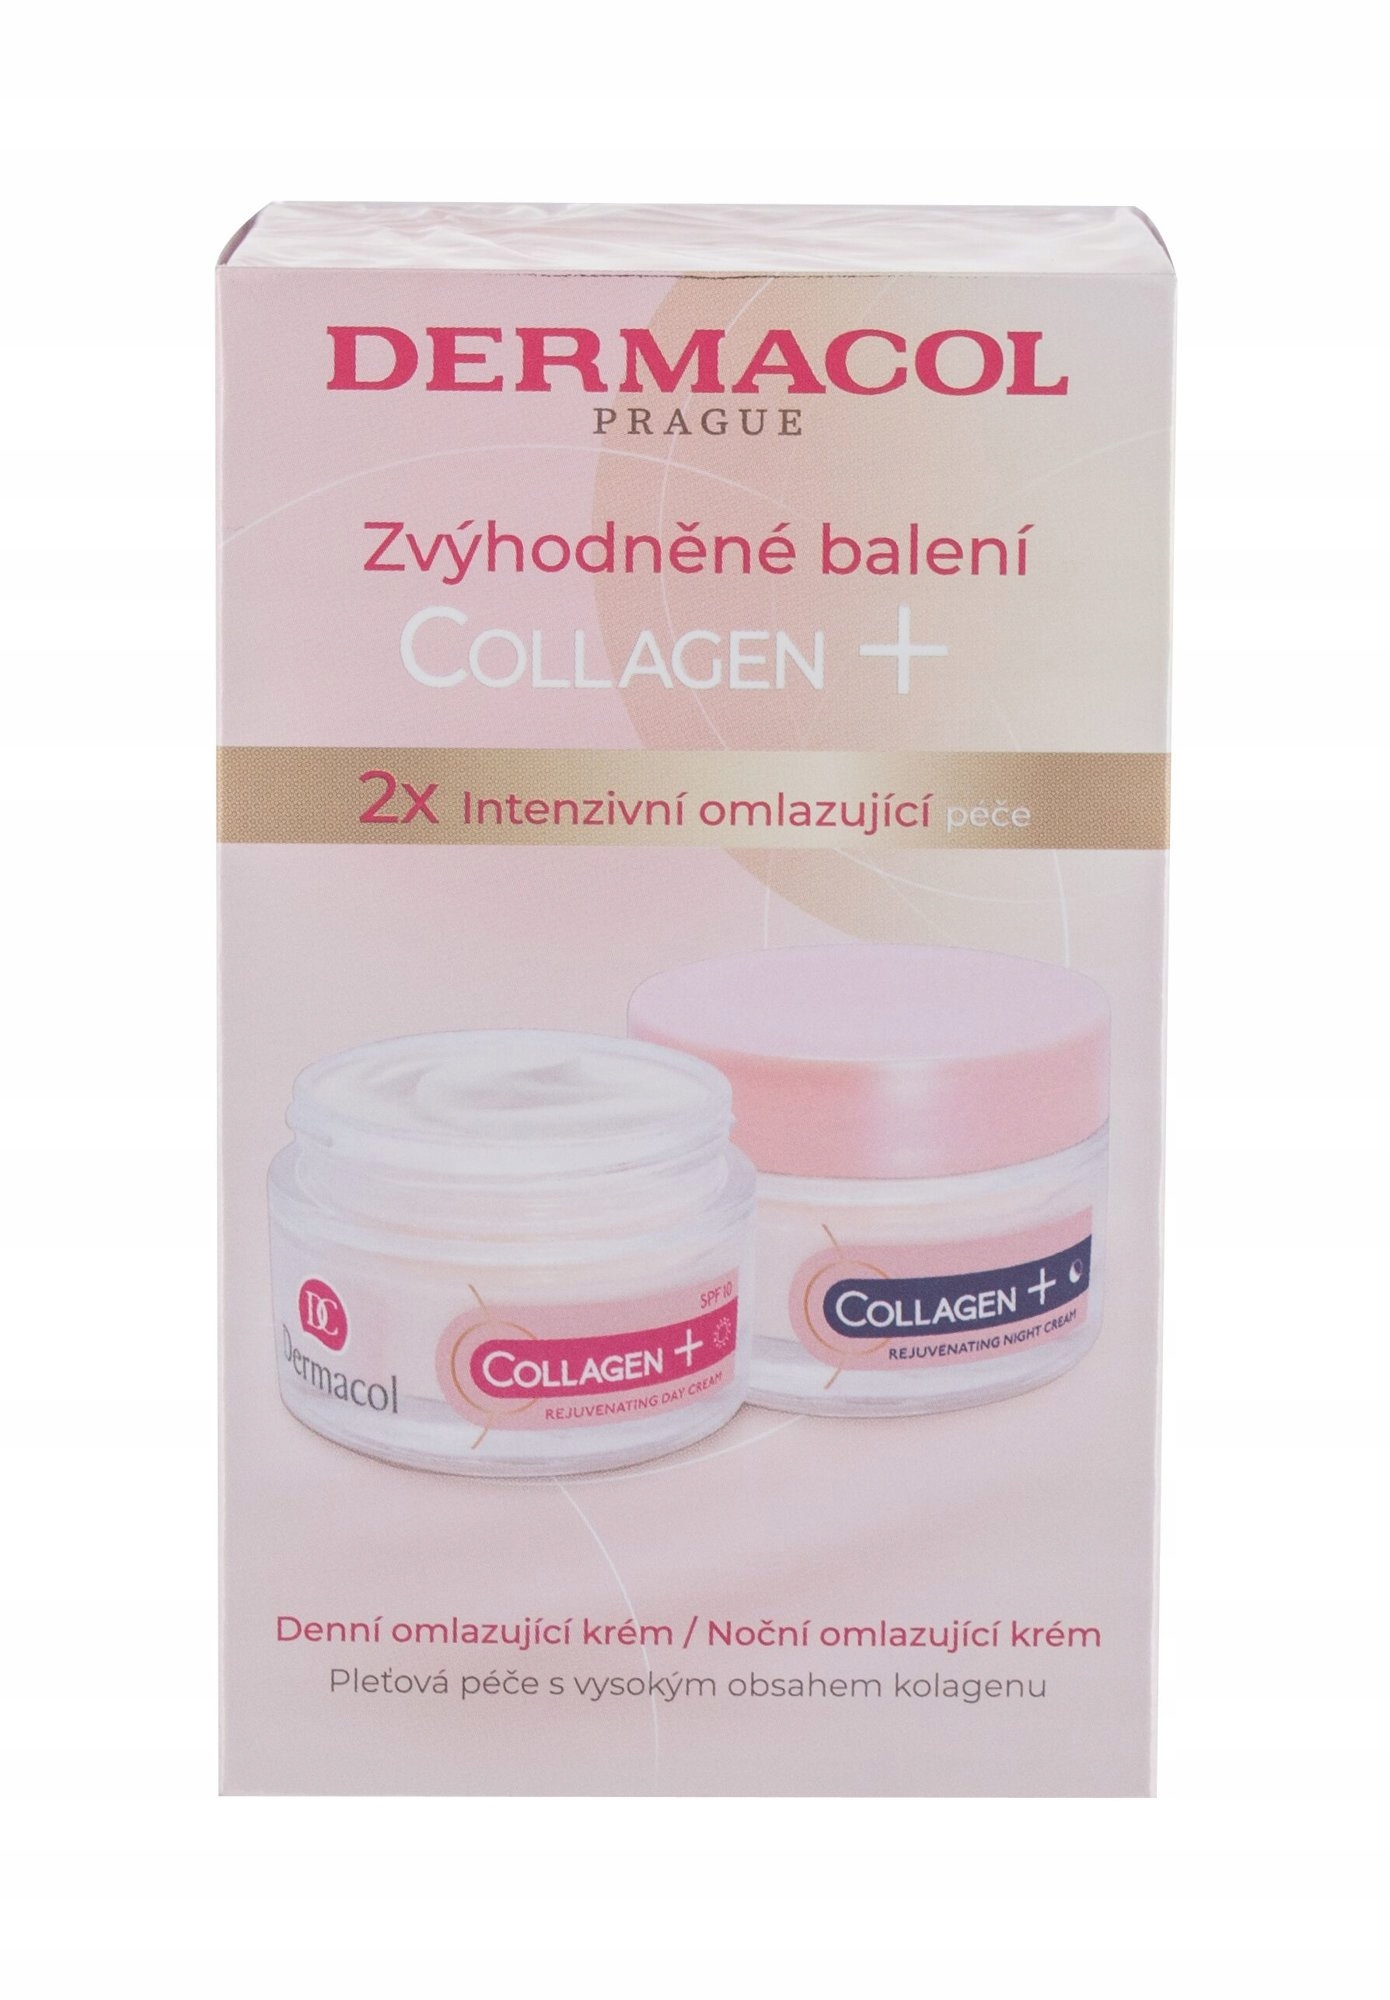 Dermacol Collagen pre ženy Denný krém